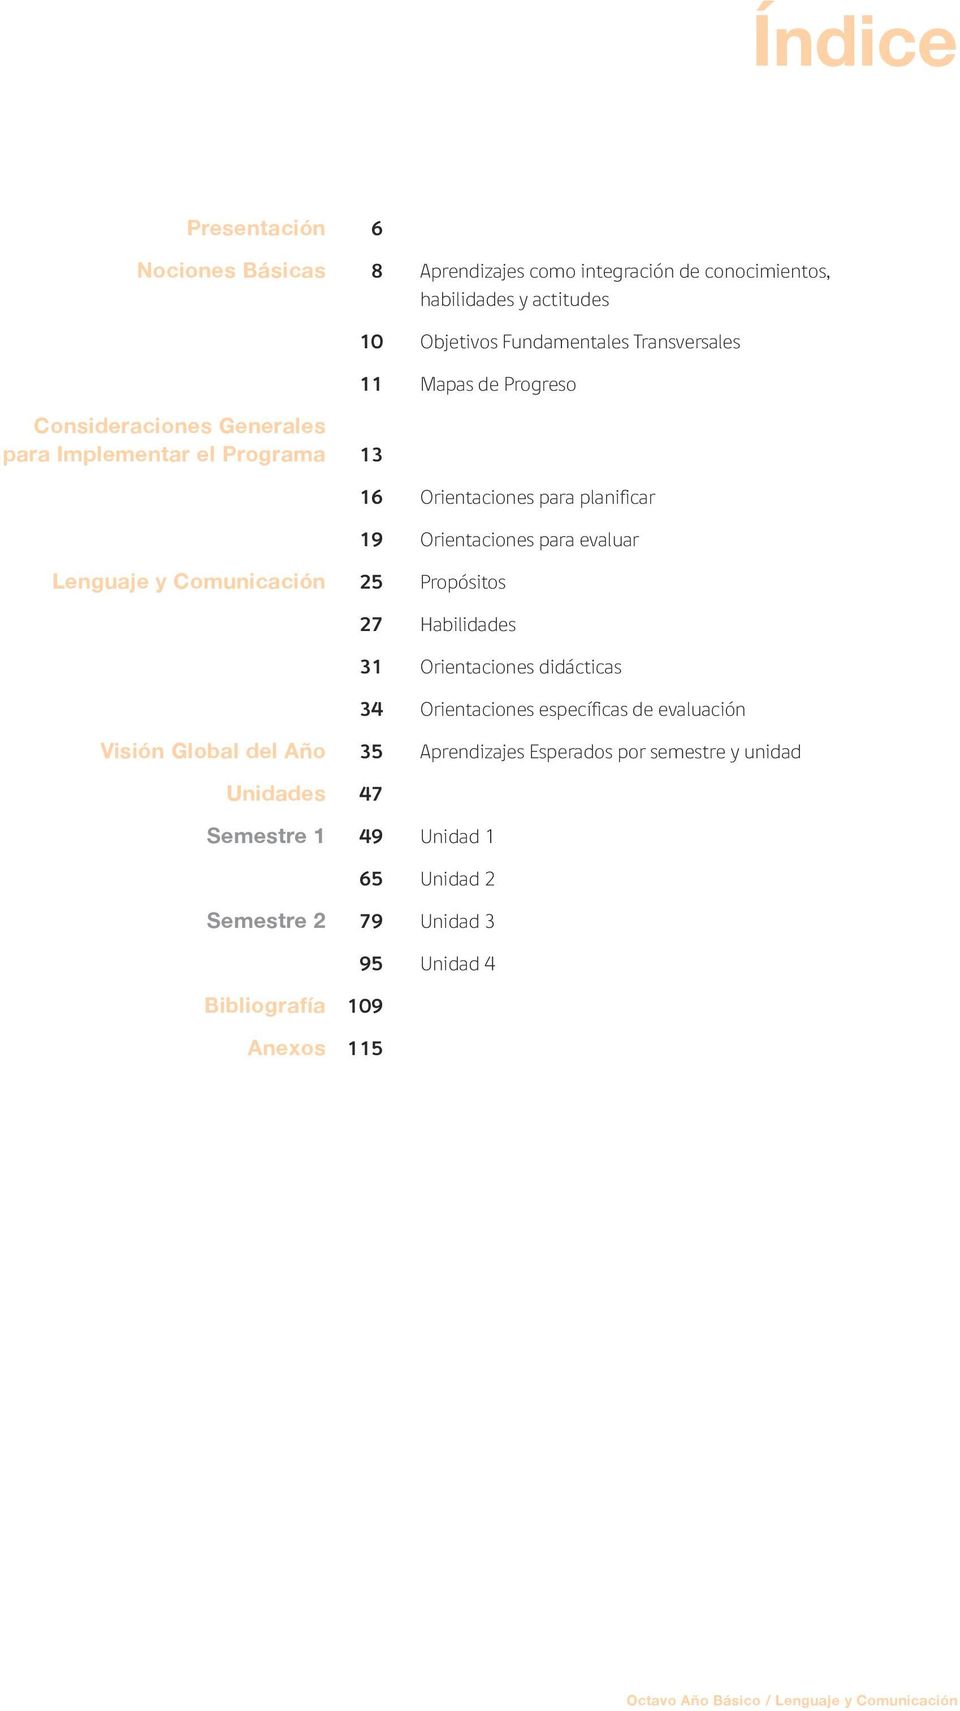 25 Propósitos 27 Habilidades 31 Orientaciones didácticas 34 Orientaciones específicas de evaluación Visión Global del Año 35 Aprendizajes Esperados por semestre